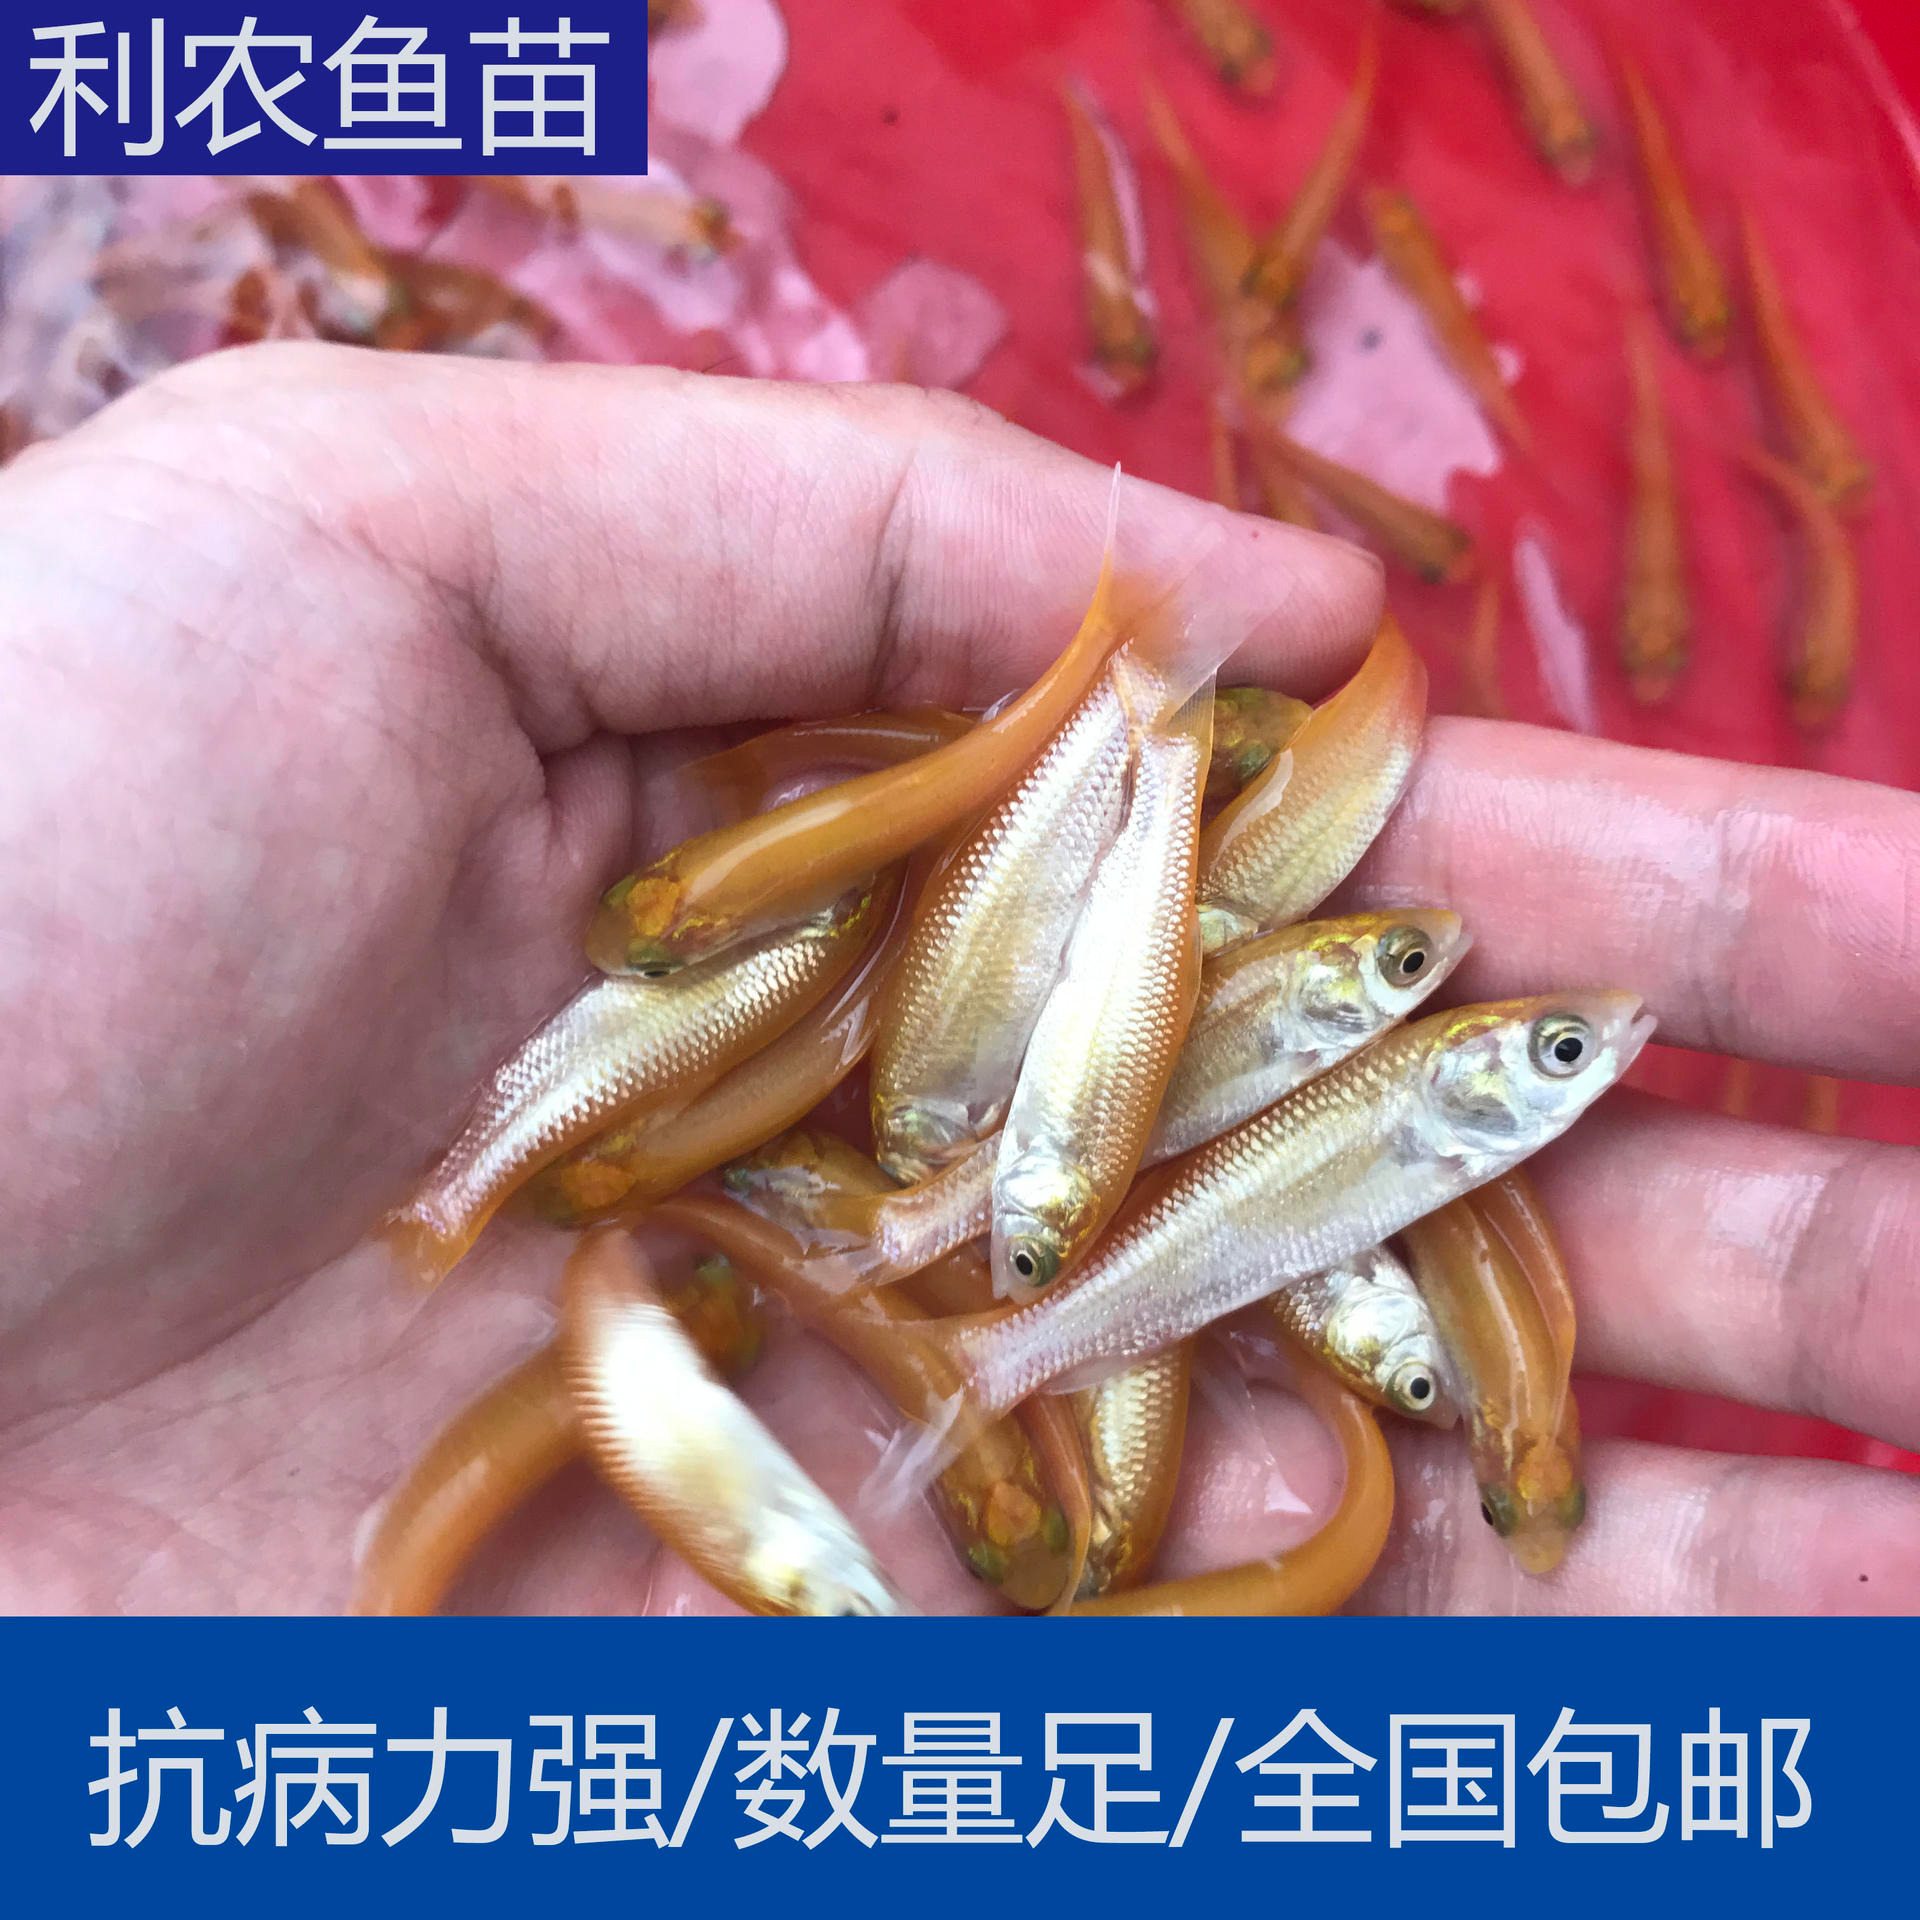 厂家直销 广东惠州金草鱼苗批发 3-5cm黄金鲩鱼苗出售 全国发货